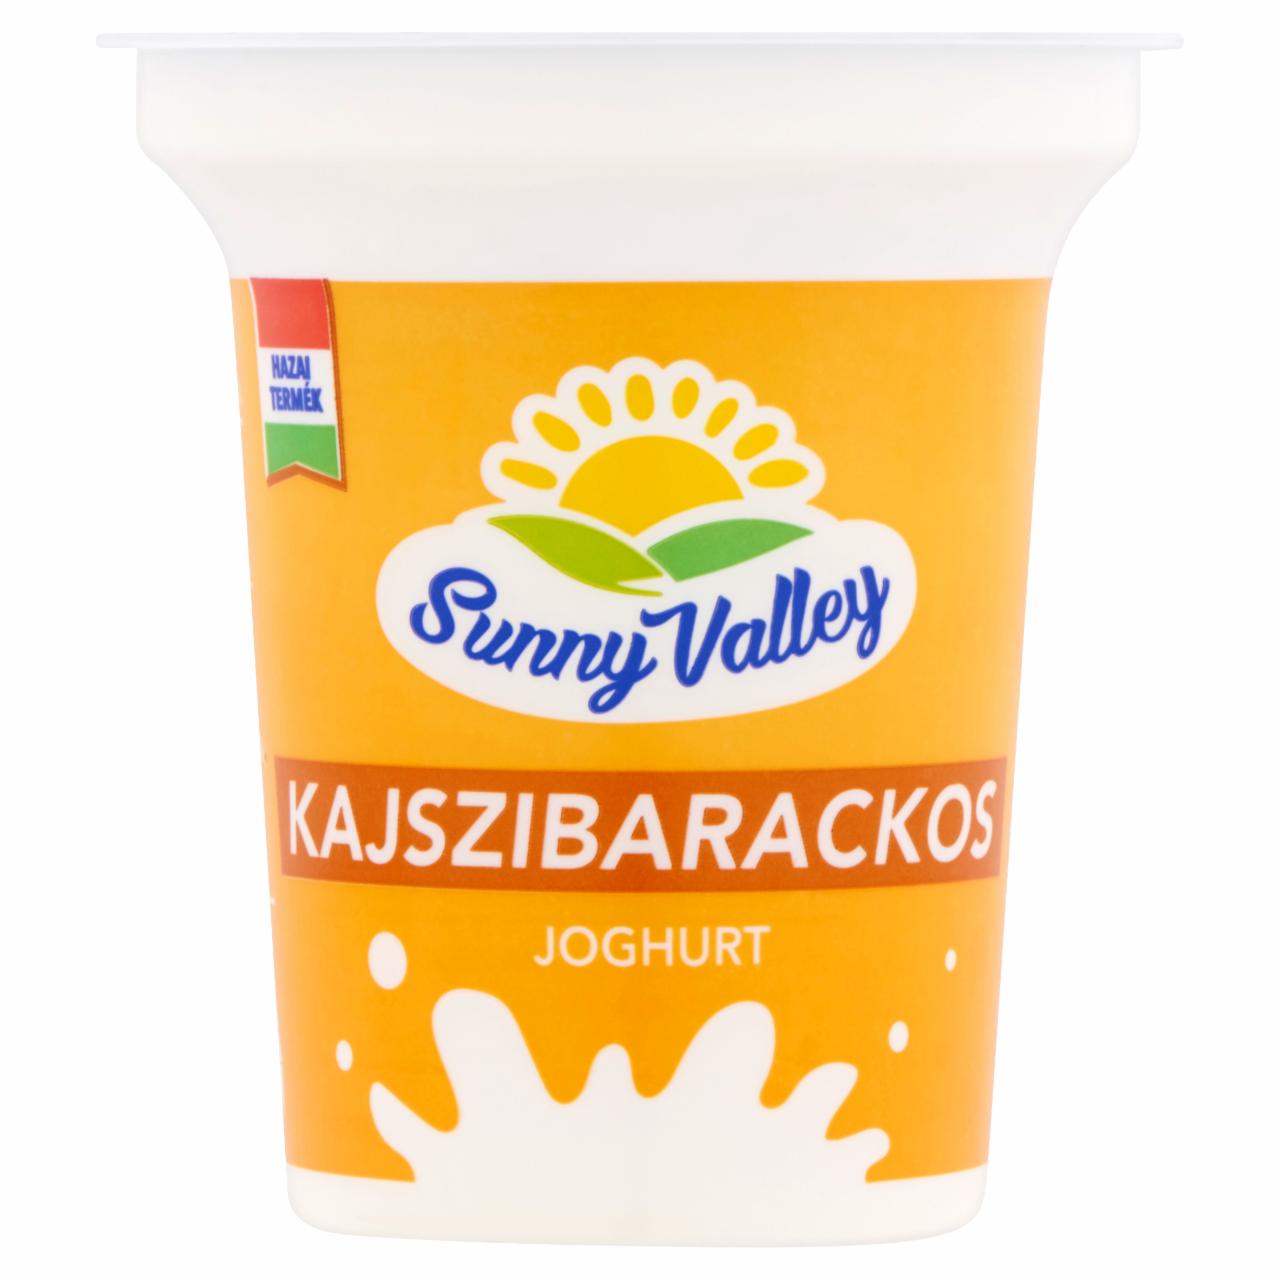 Képek - Sunny Valley élőflórás, zsírszegény kajszibarackos joghurt 140 g